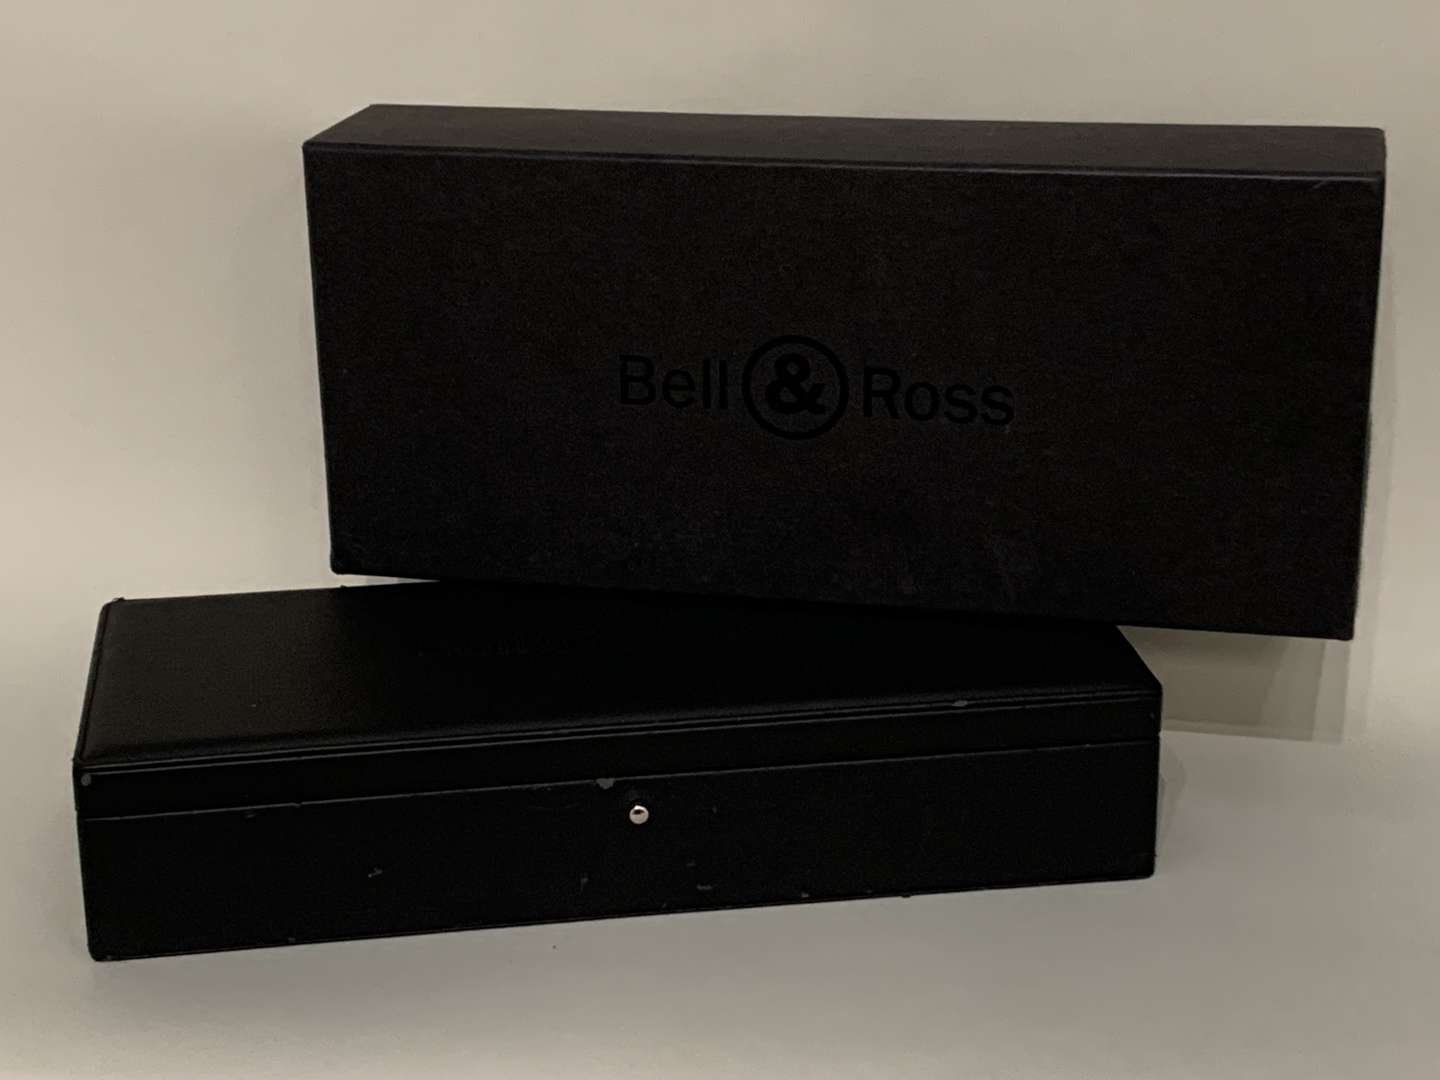 <p>Bell & Ross BR03-94 watch</p>